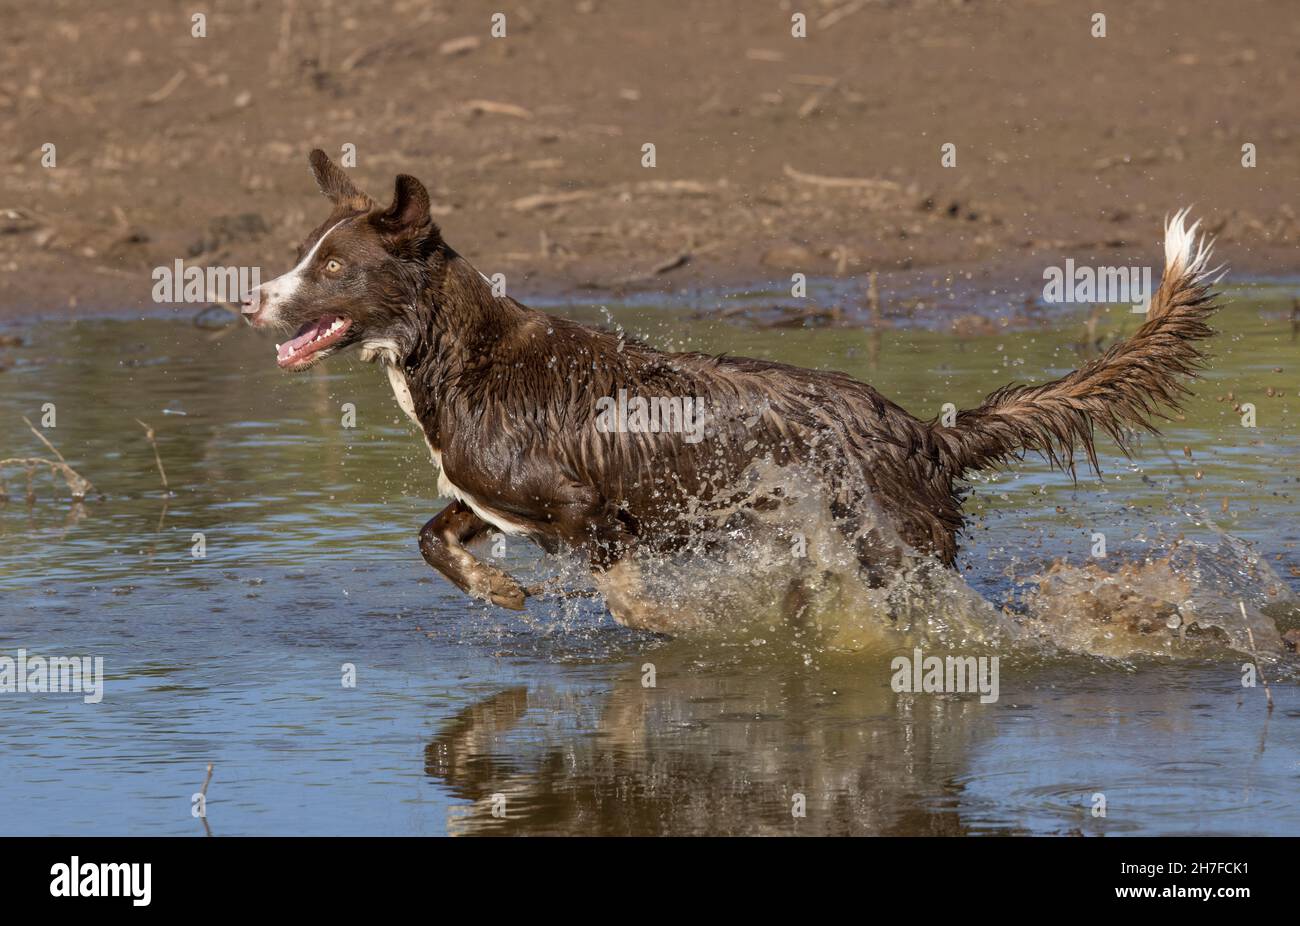 Colis frontera chocolate, perro doméstico, Canis familiaris, jugando en el agua Foto de stock